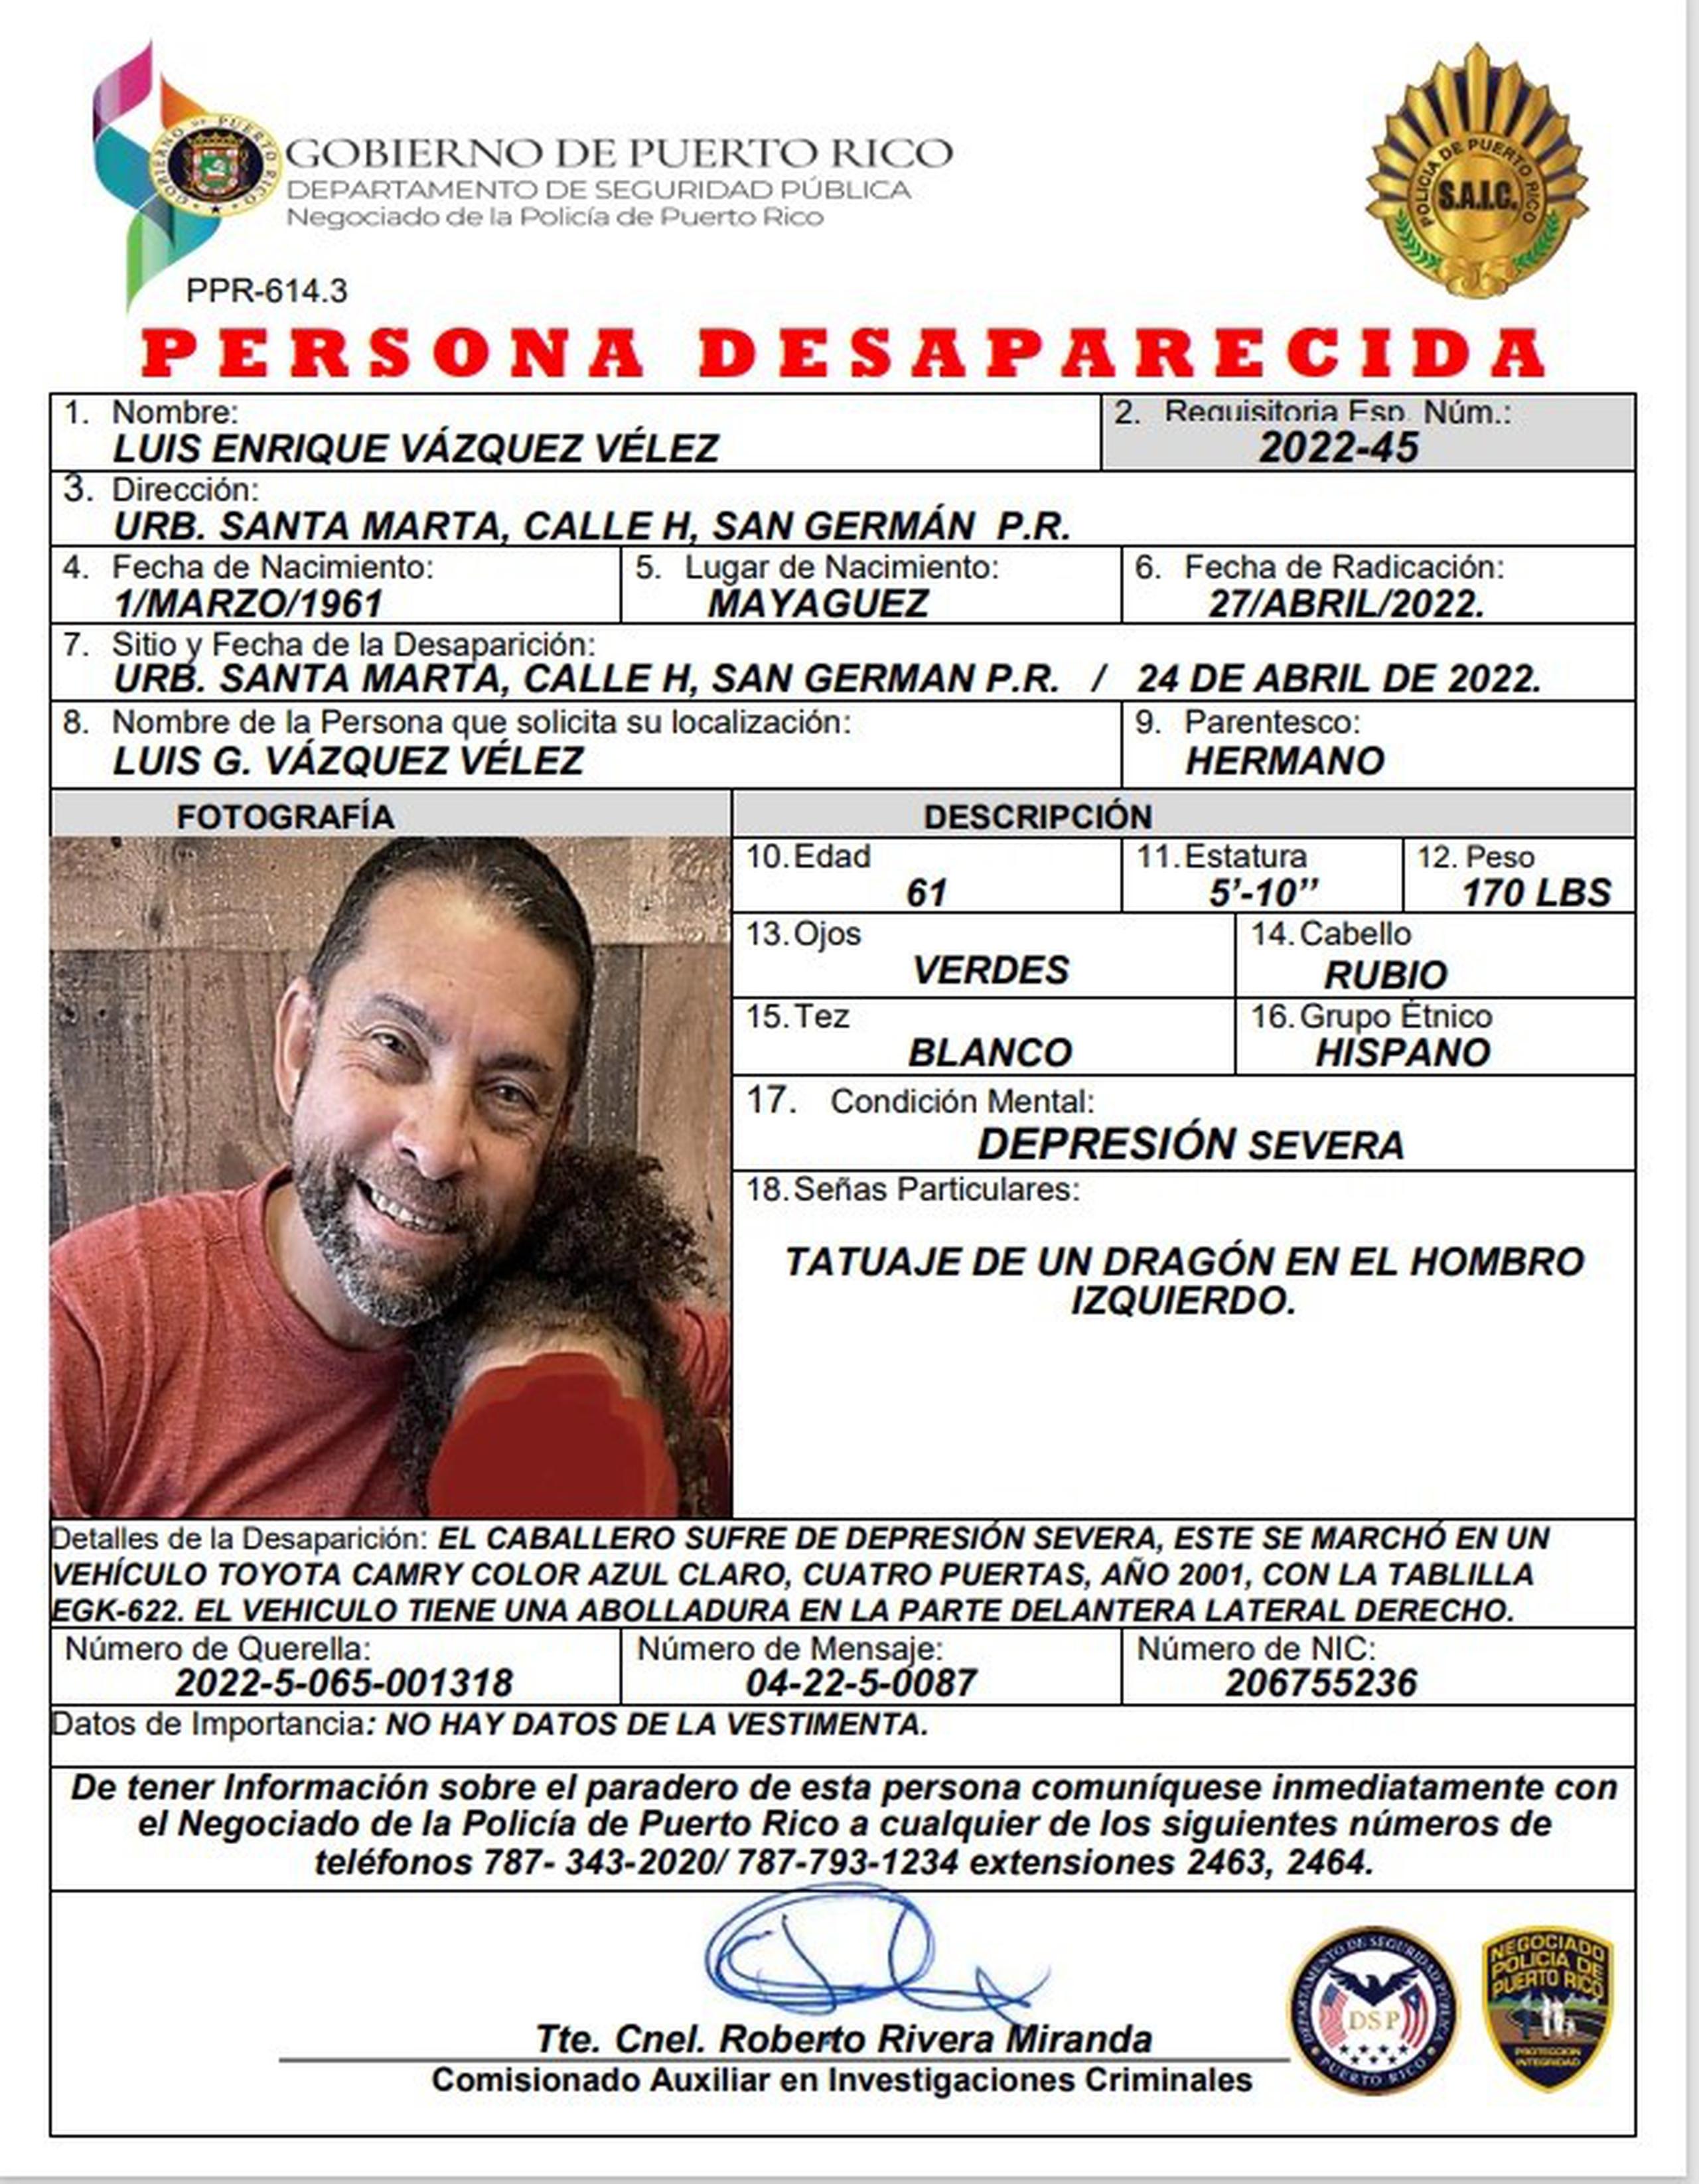 Luis E. Vázquez Vélez de 61 años, fue visto por última vez el 24 de abril, cuando salió de su residencia en San Germán.